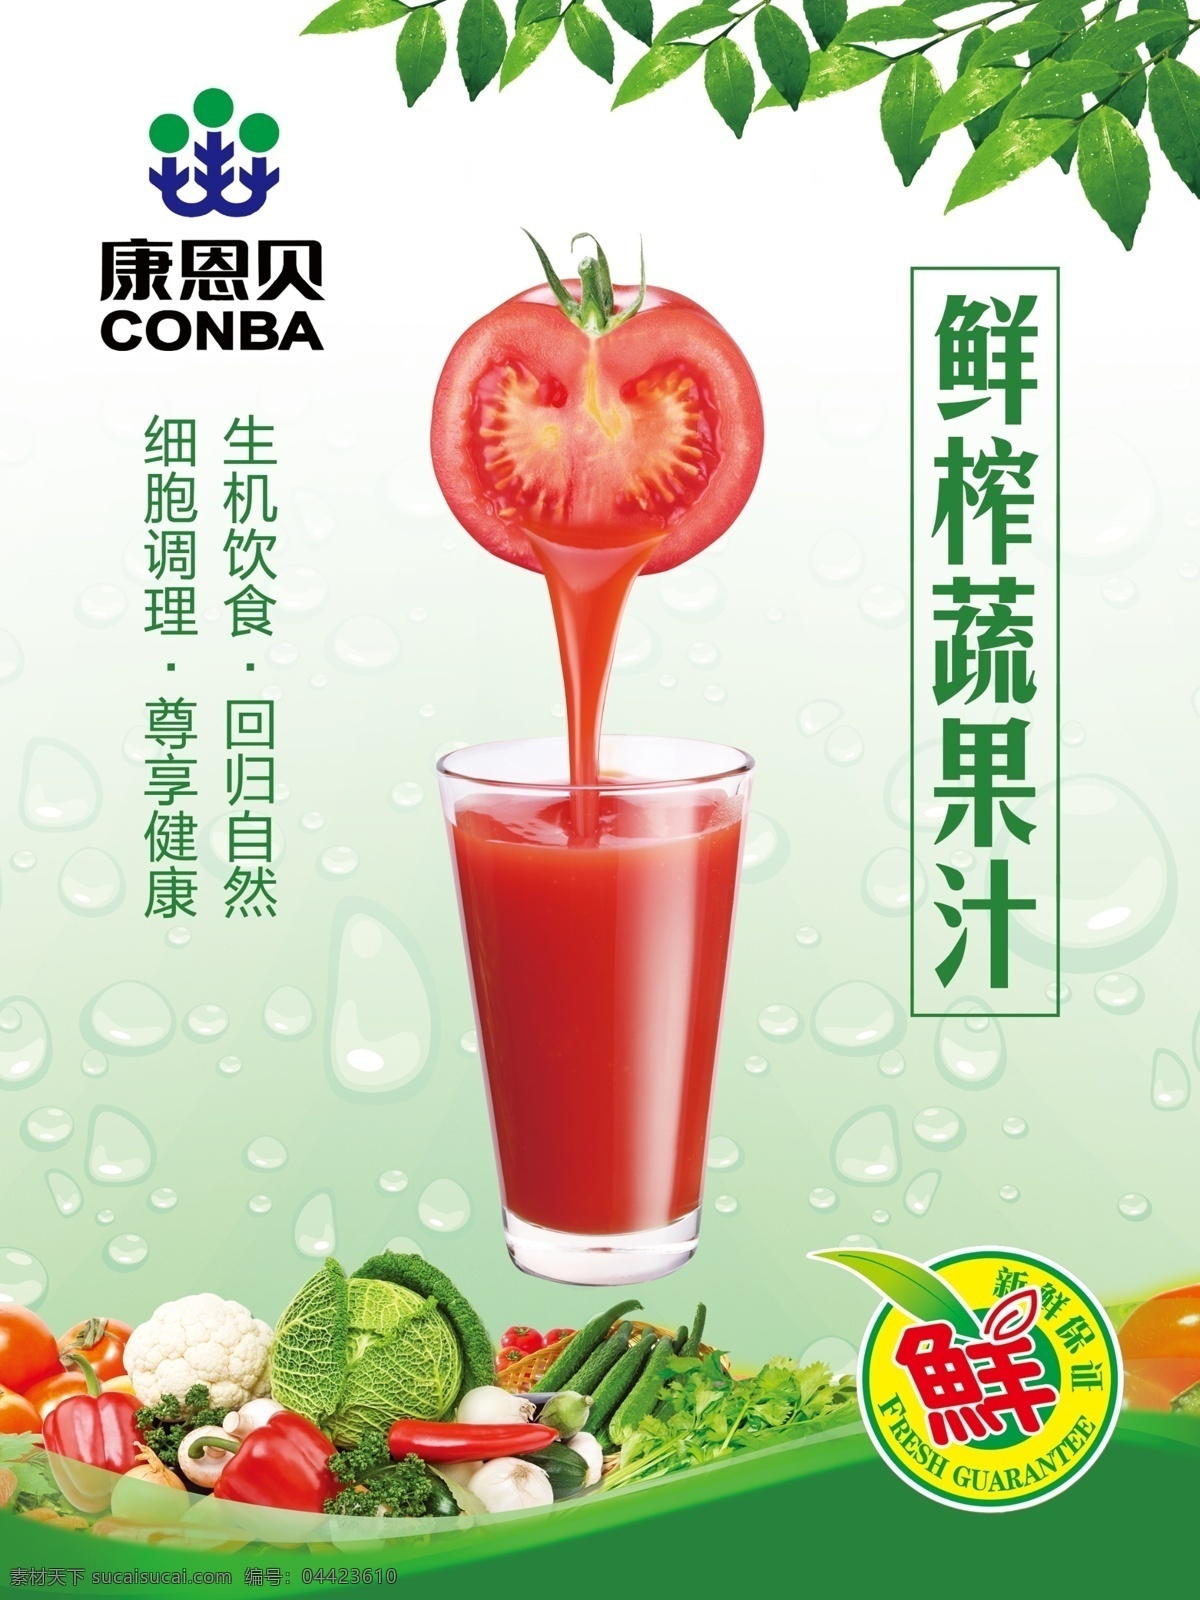 蔬果汁 水果汁 果汁 蔬菜 水果 生机饮食 康恩贝 鲜榨果汁 西红柿 设计空间